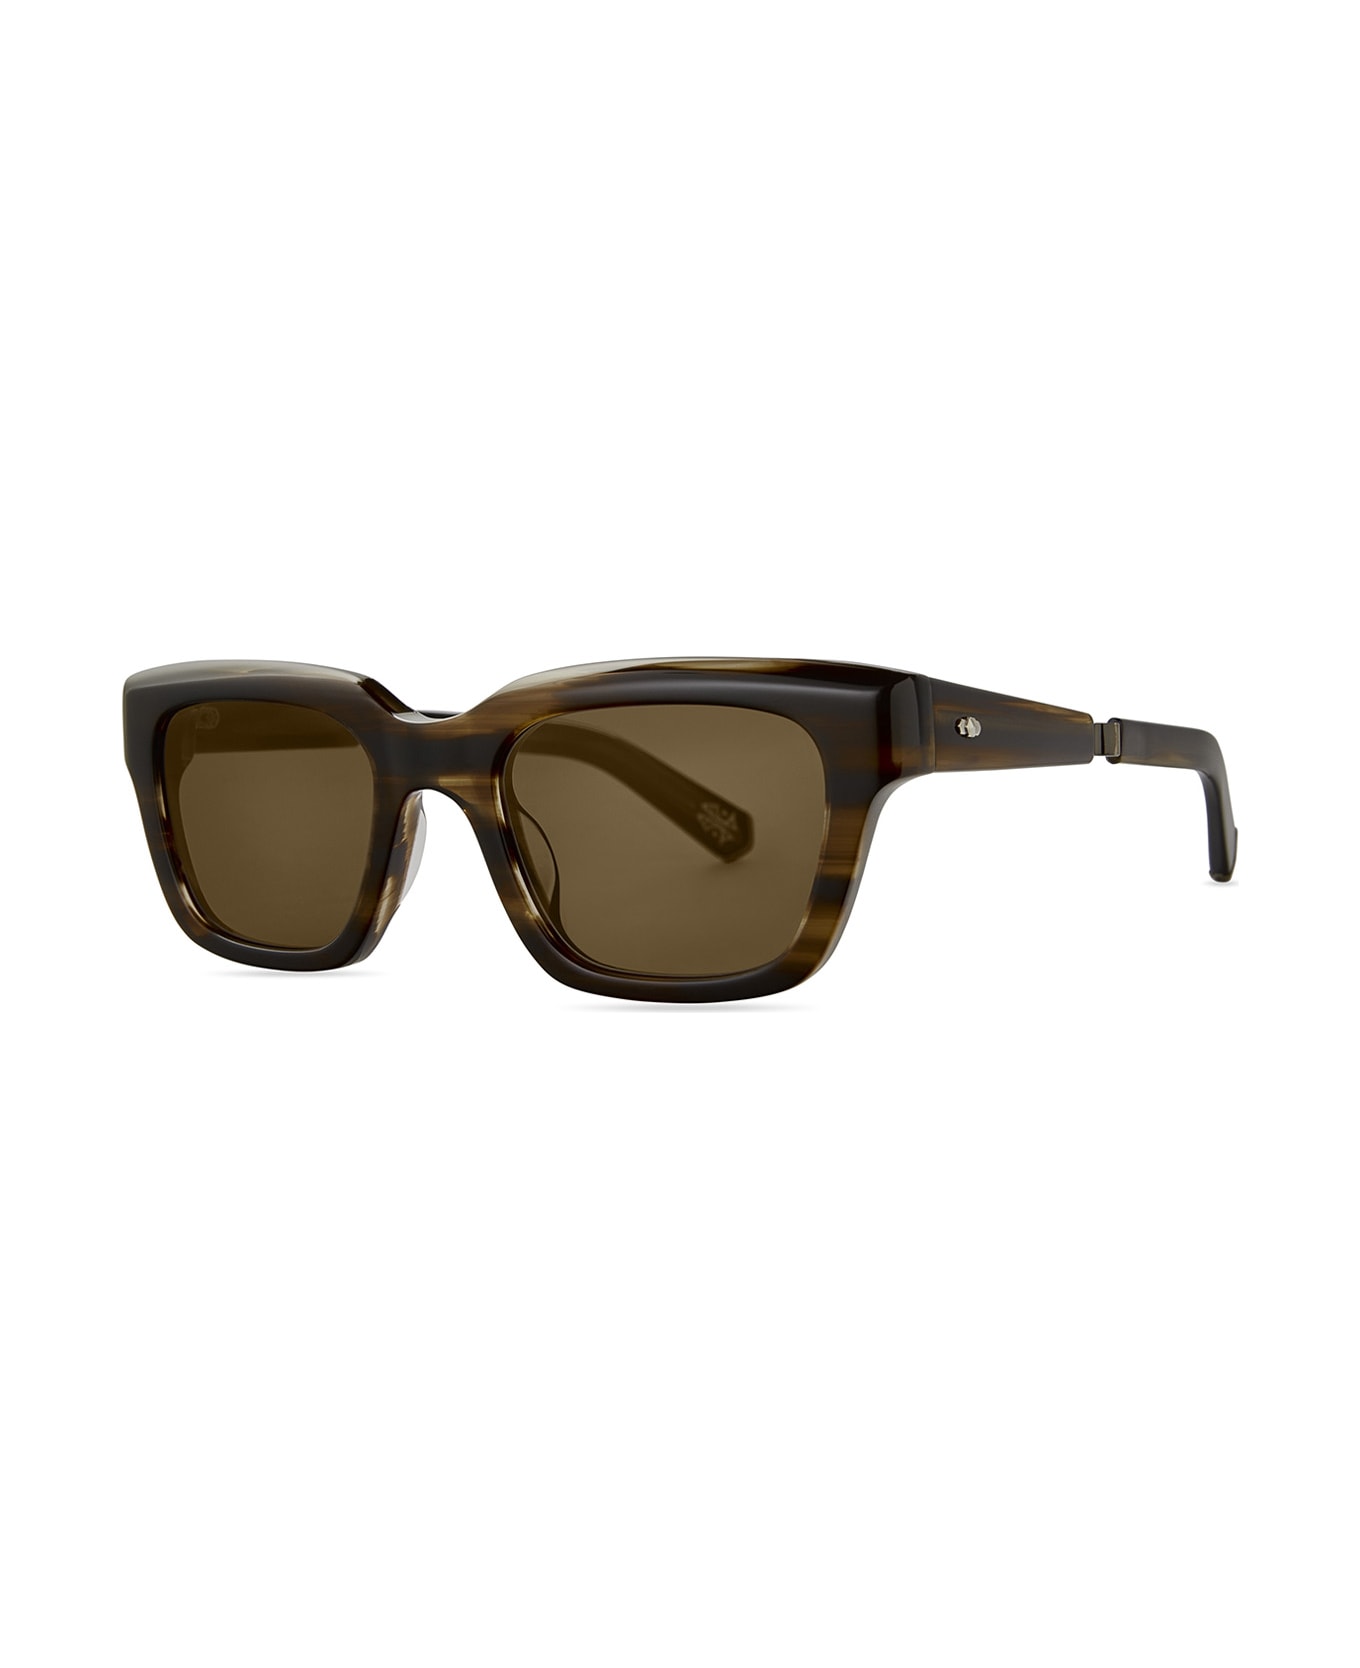 Mr. Leight Maven S Koa-white Gold/semi-flat Kona Brown Sunglasses - Koa-White Gold/Semi-Flat Kona Brown サングラス